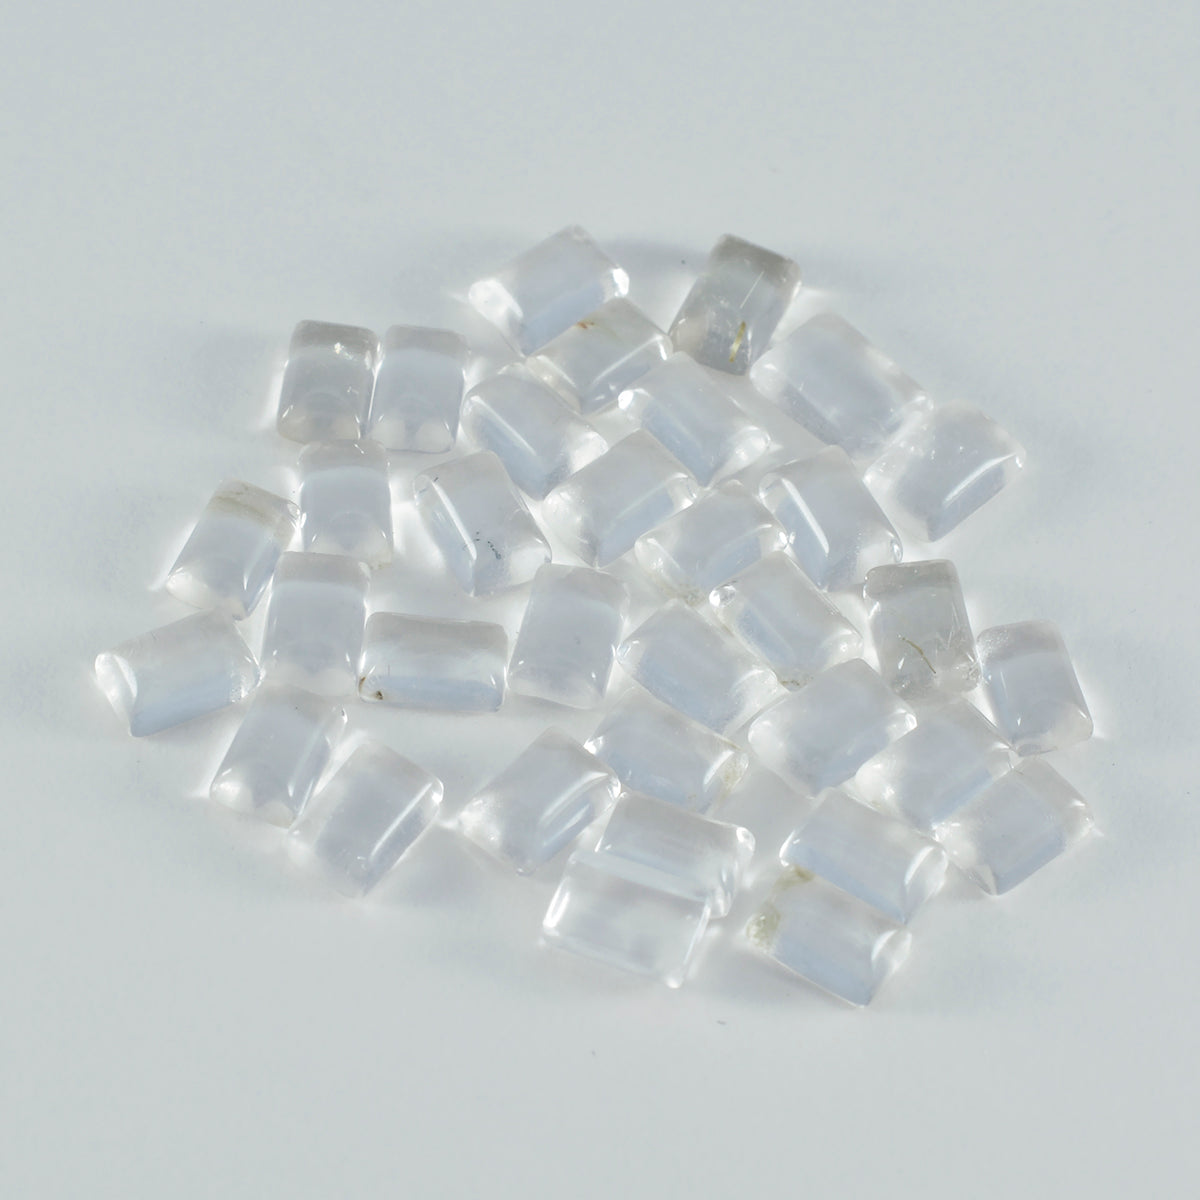 Riyogems – cabochon de quartz en cristal blanc, 5x7mm, forme octogonale, jolies pierres précieuses de qualité, 1 pièce